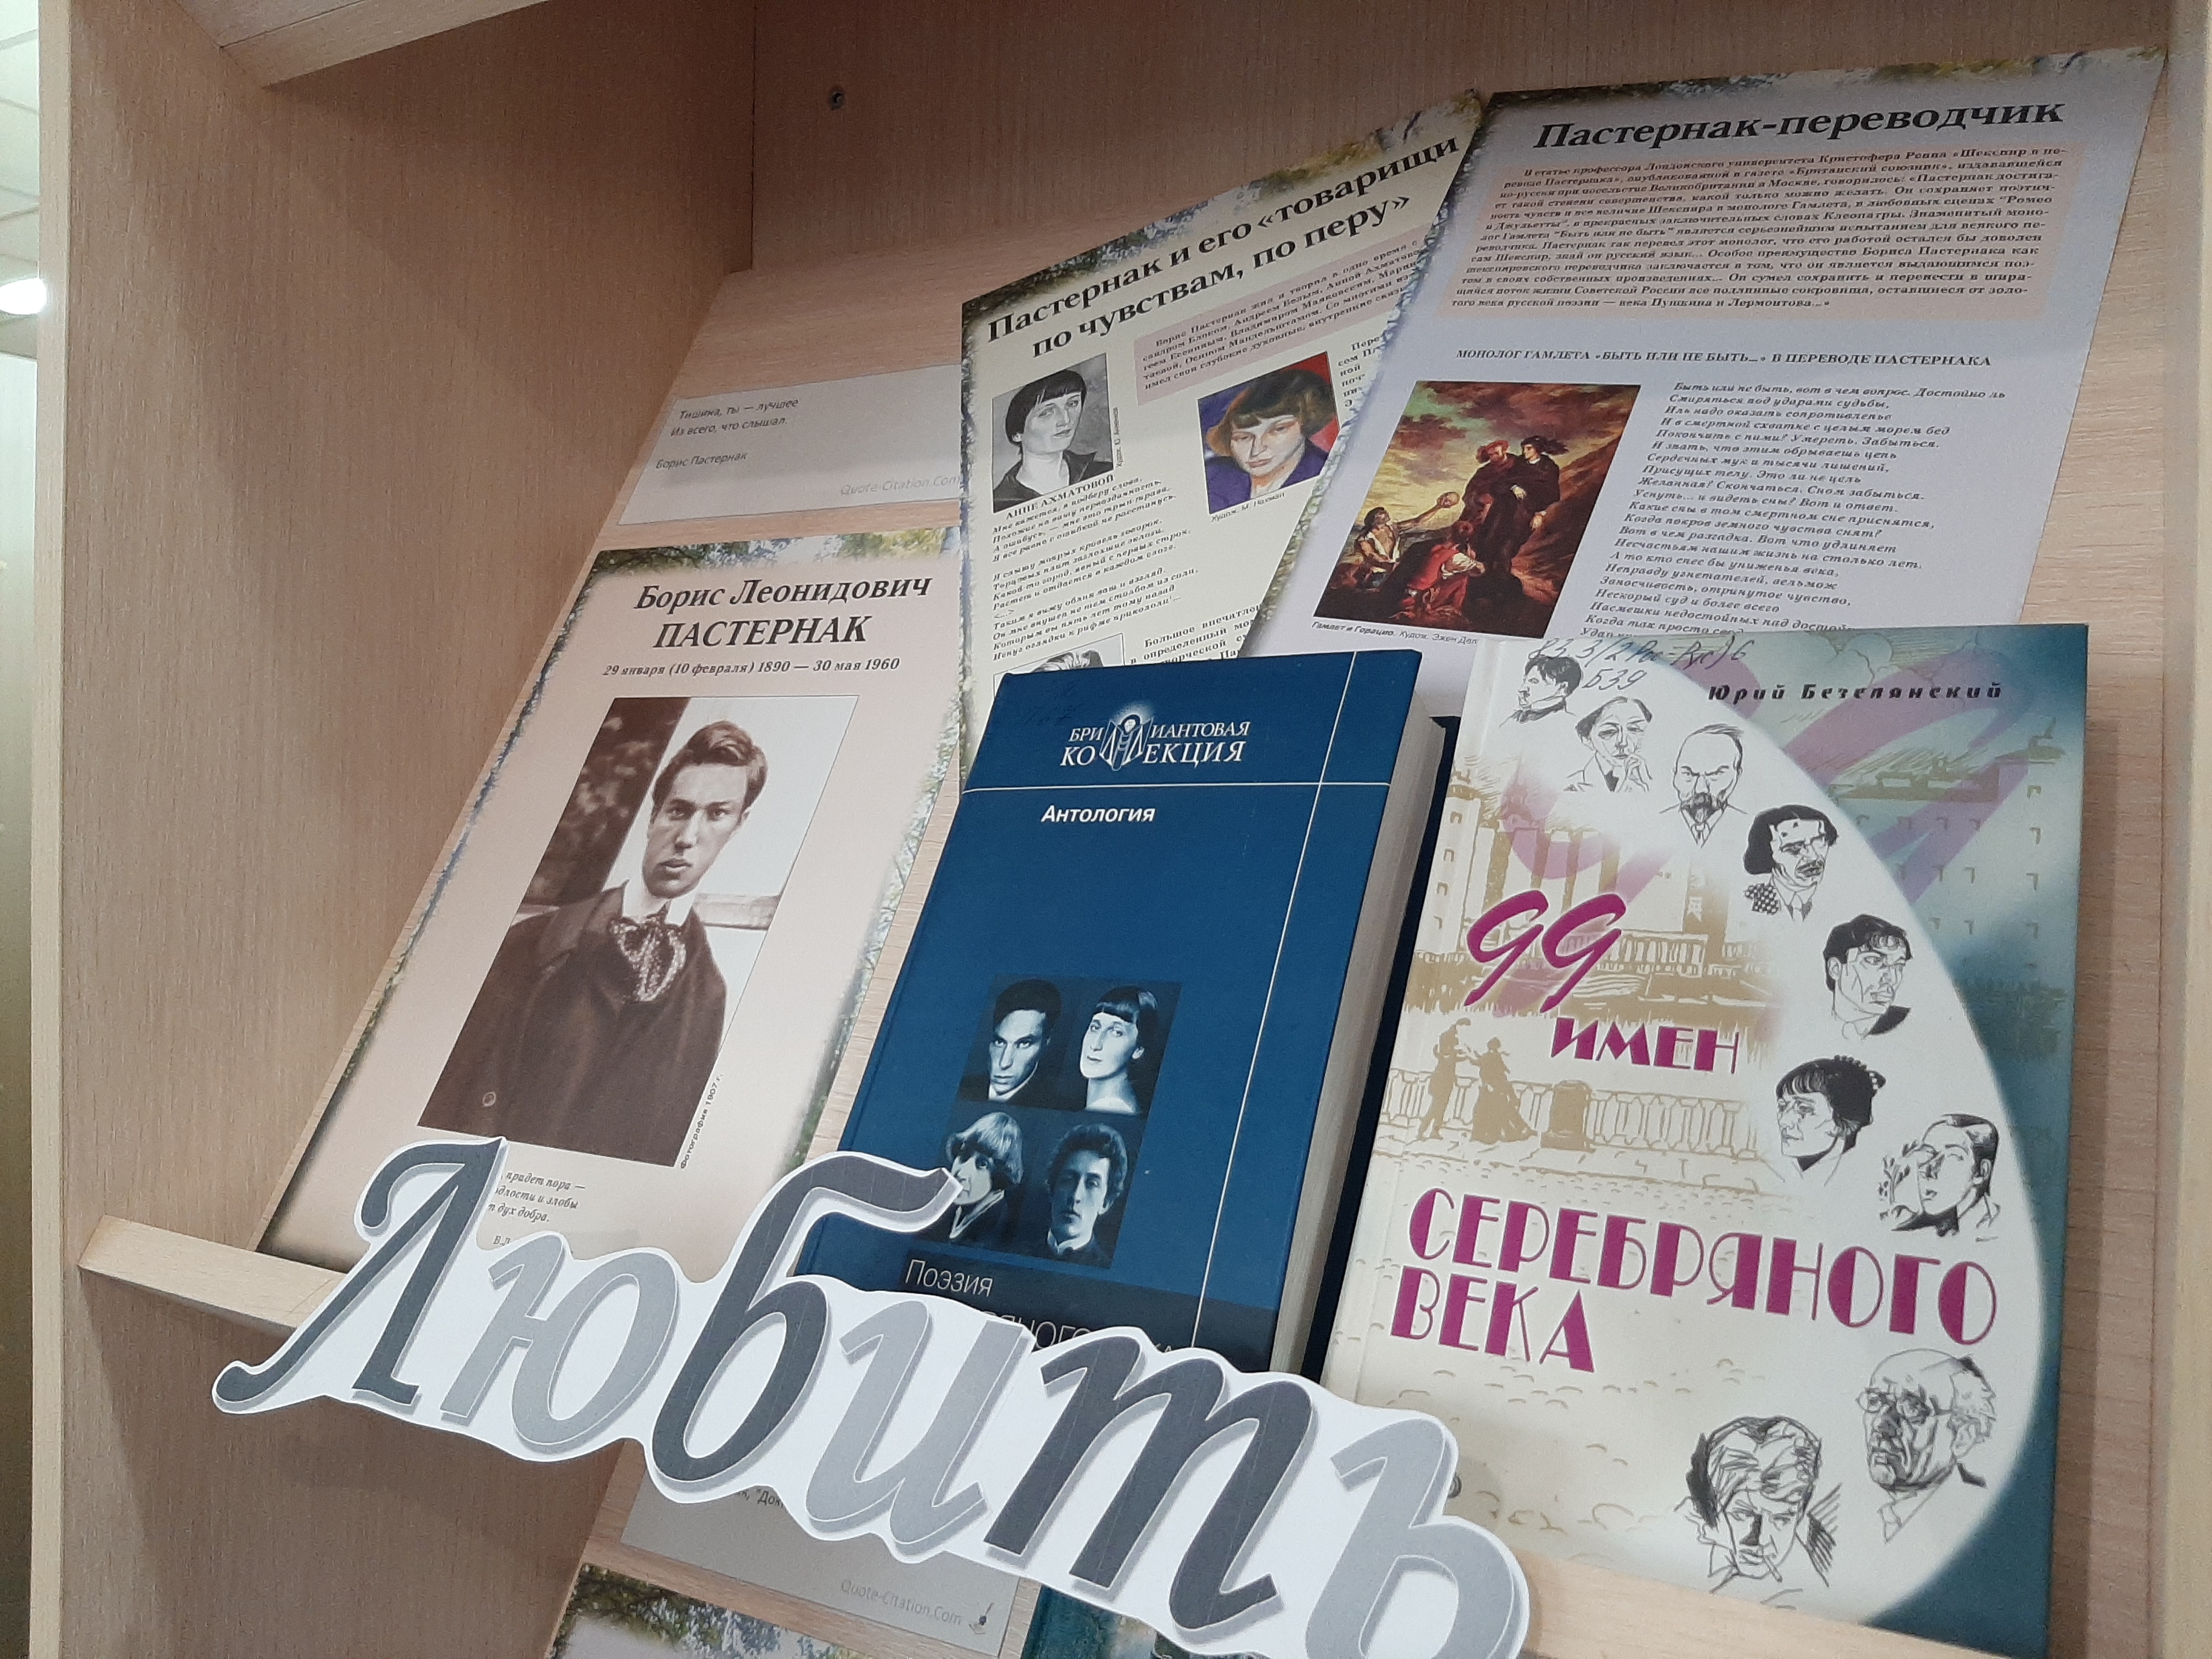 Выставку к юбилею поэта Бориса Пастернака организовали в центральной библиотеке